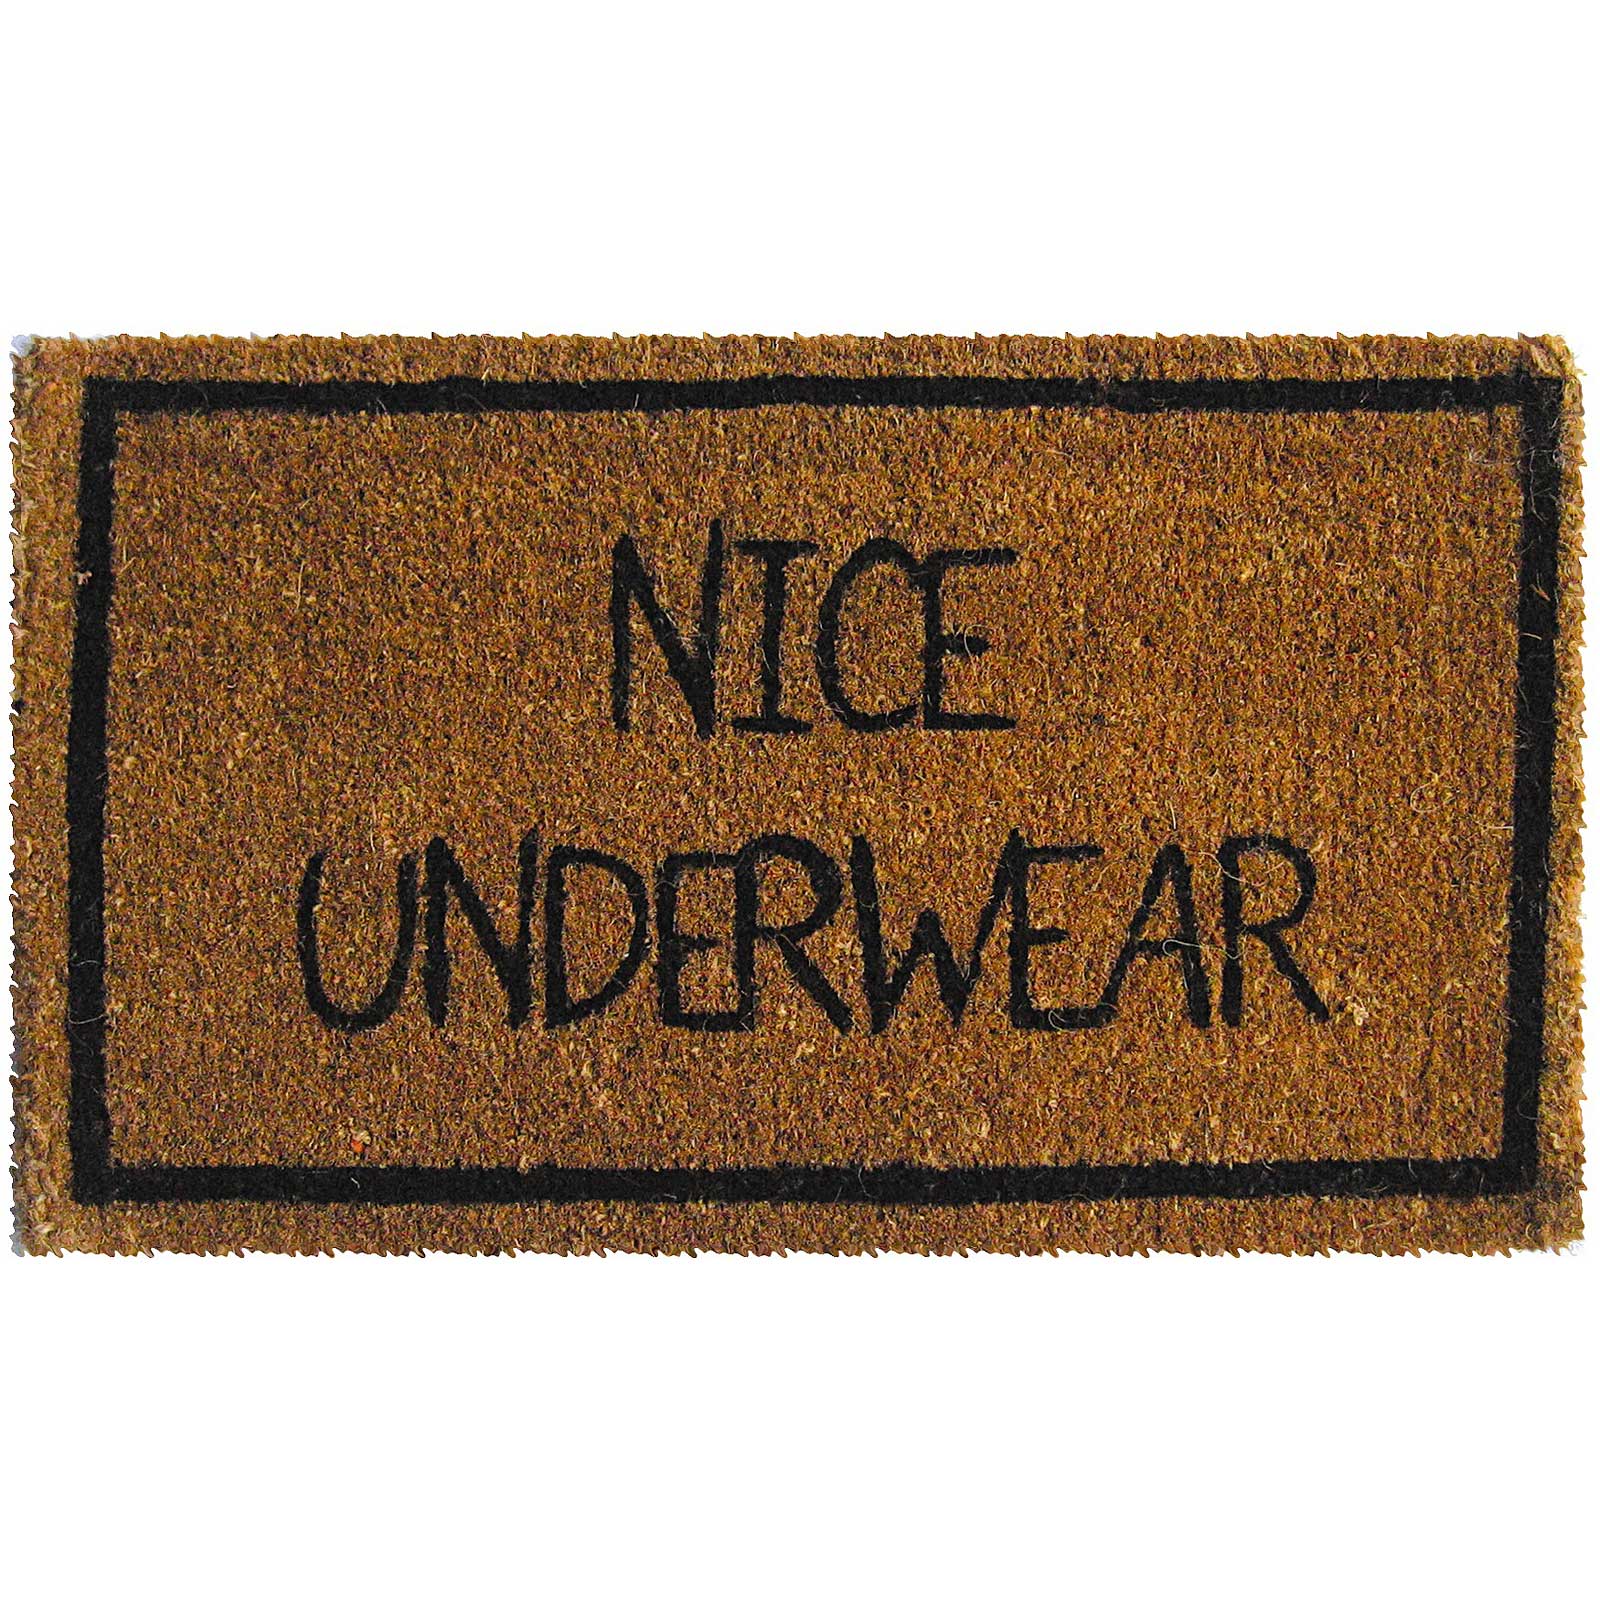 Nice Underwear Mat | Hilarious Doormat, Welcome Mat Humor, Undies ...